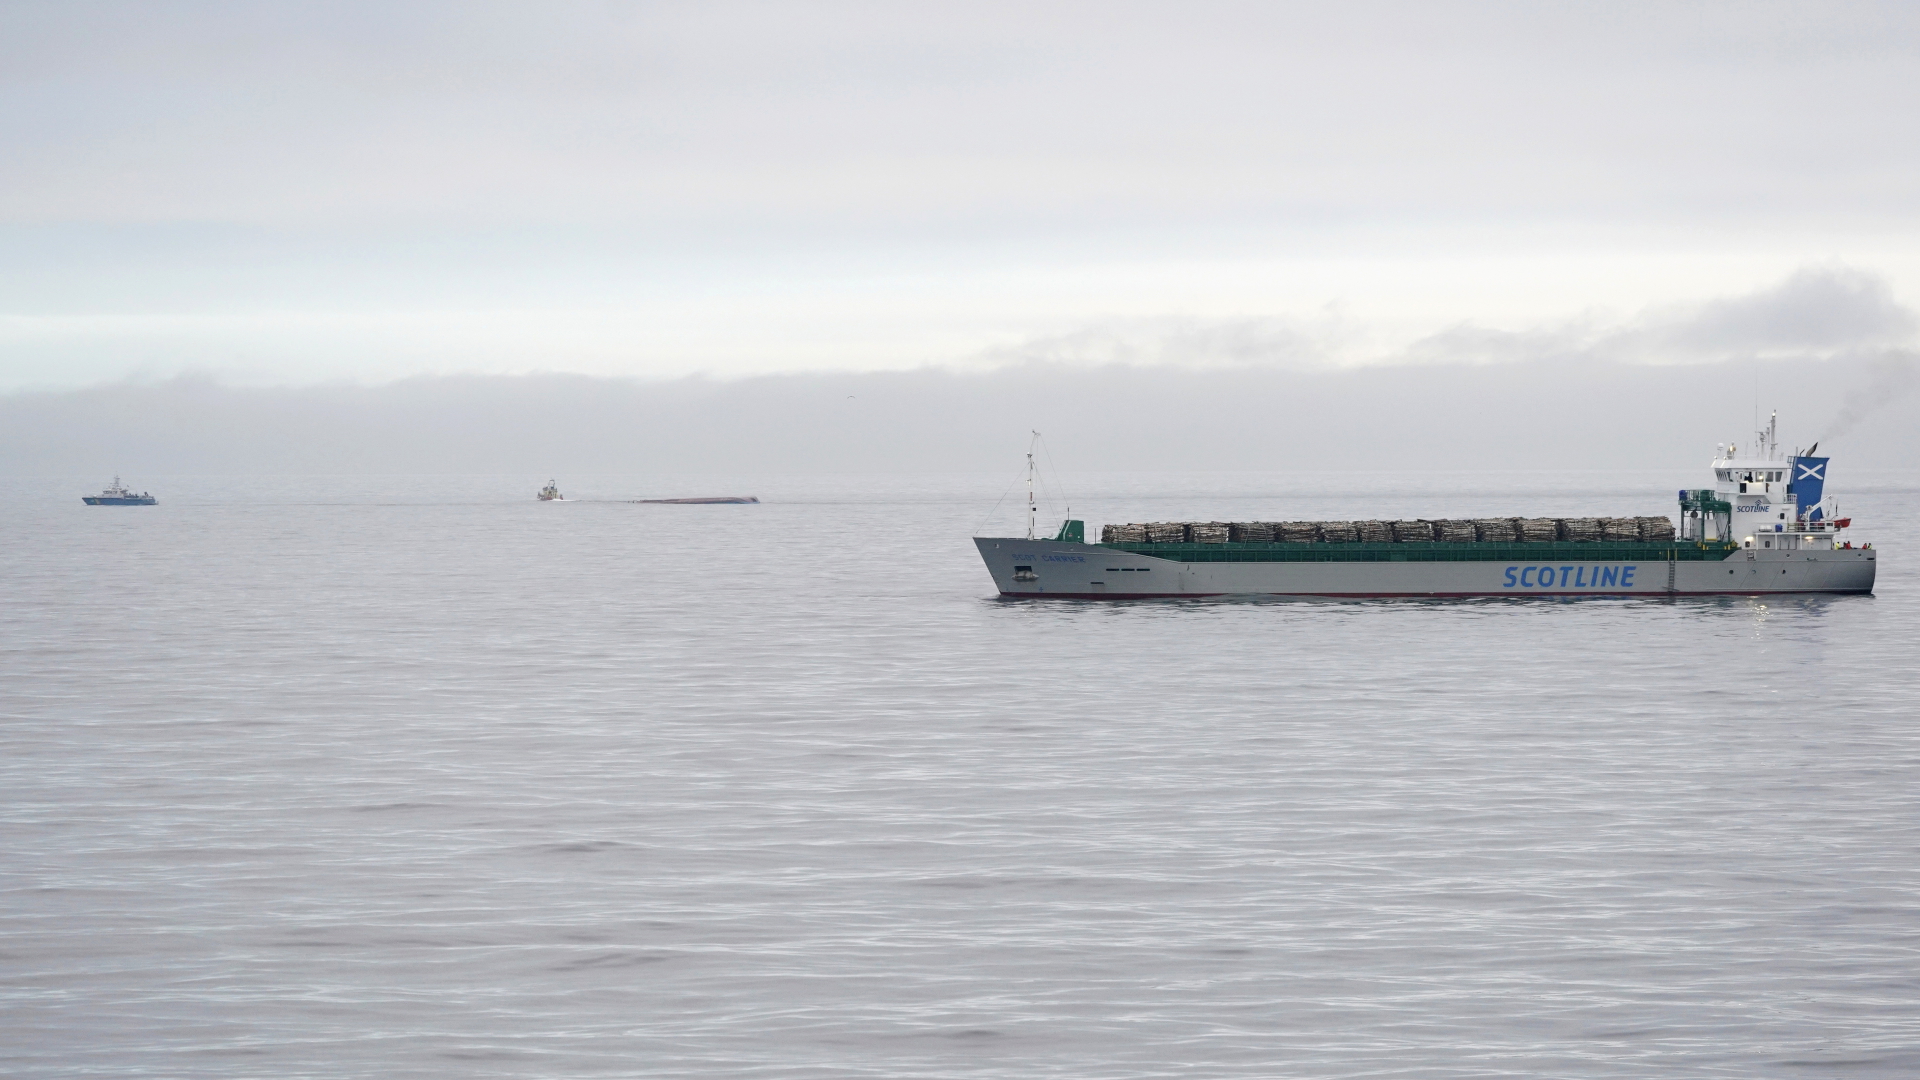 Das britische Frachtschiff in der Ostsee zwischen Ystad und der Insel Bornholm, im Hintergrund ist der mit dem Kiel nach oben liegende Frachter zu sehen.